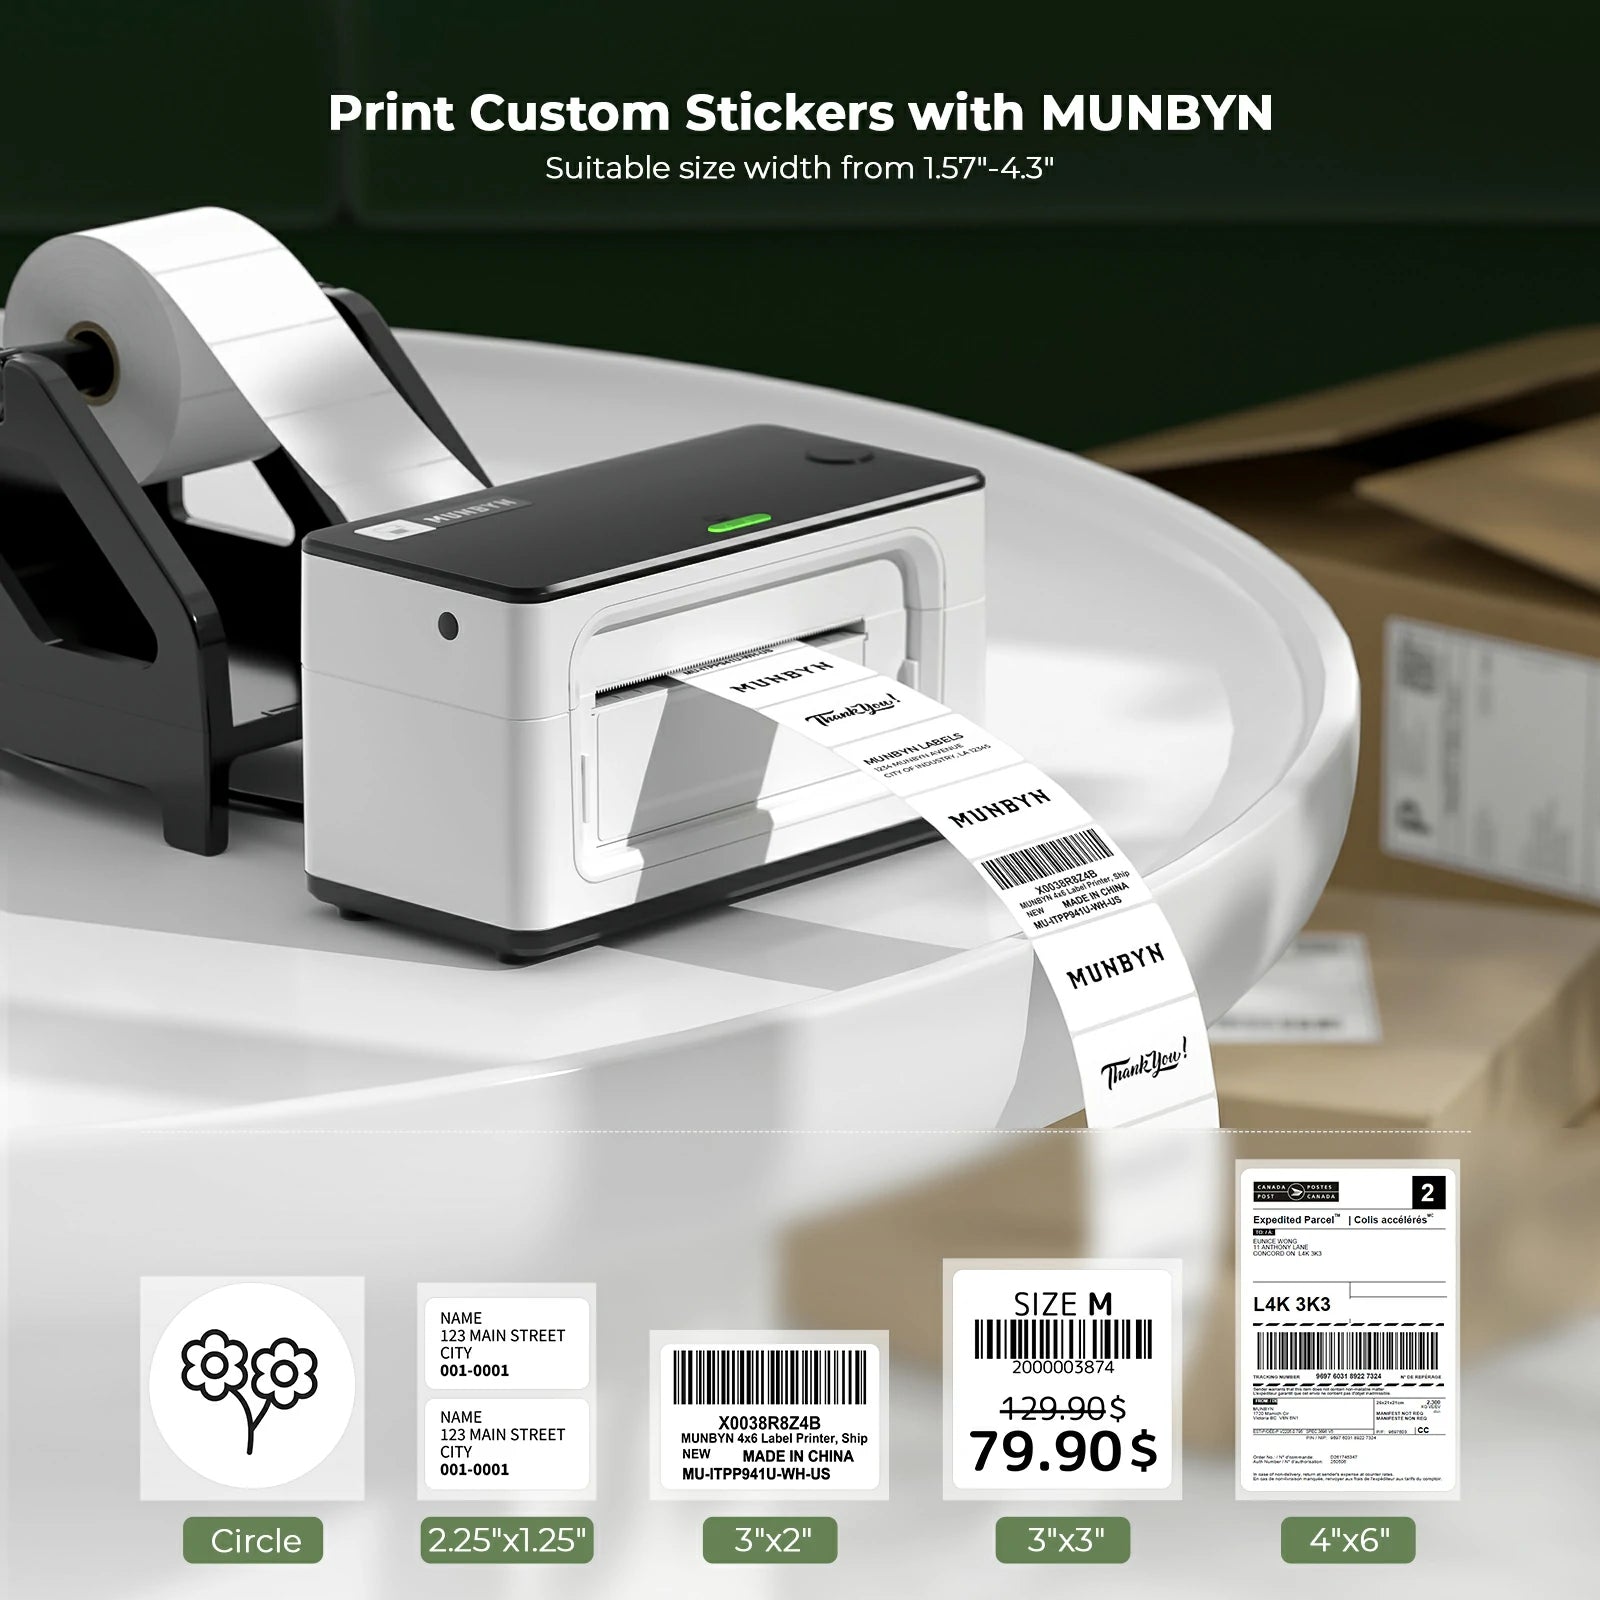 MUNBYN RealWriter 941 USB Thermal Label Printer